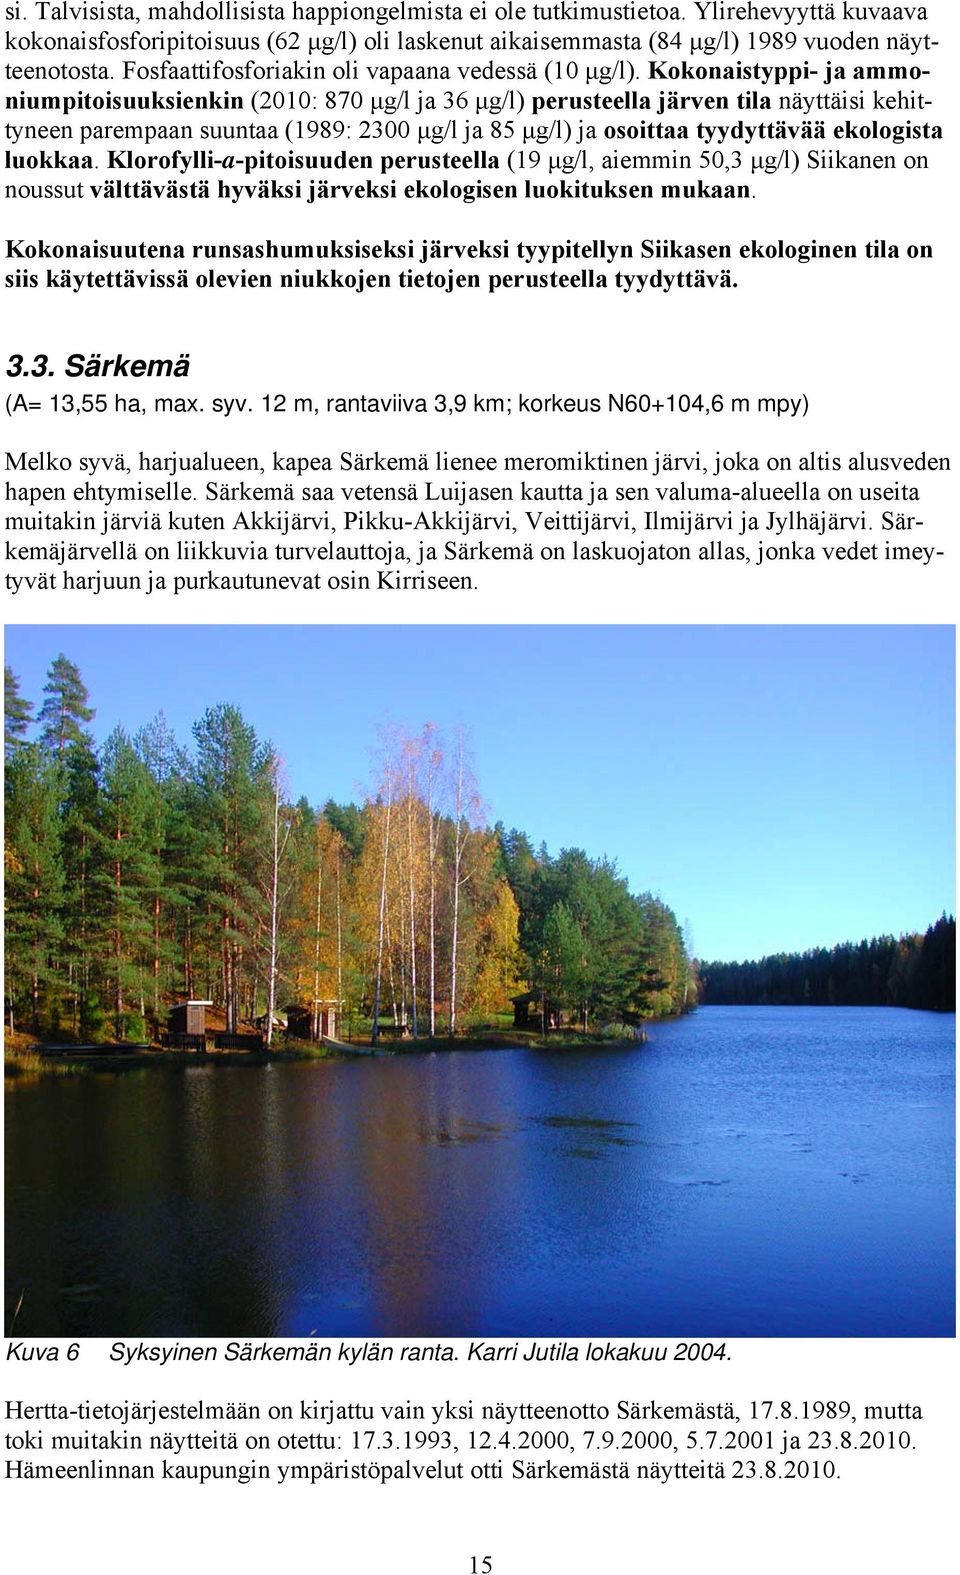 Kokonaistyppi- ja ammoniumpitoisuuksienkin (2010: 870 μg/l ja 36 μg/l) perusteella järven tila näyttäisi kehittyneen parempaan suuntaa (1989: 2300 μg/l ja 85 μg/l) ja osoittaa tyydyttävää ekologista